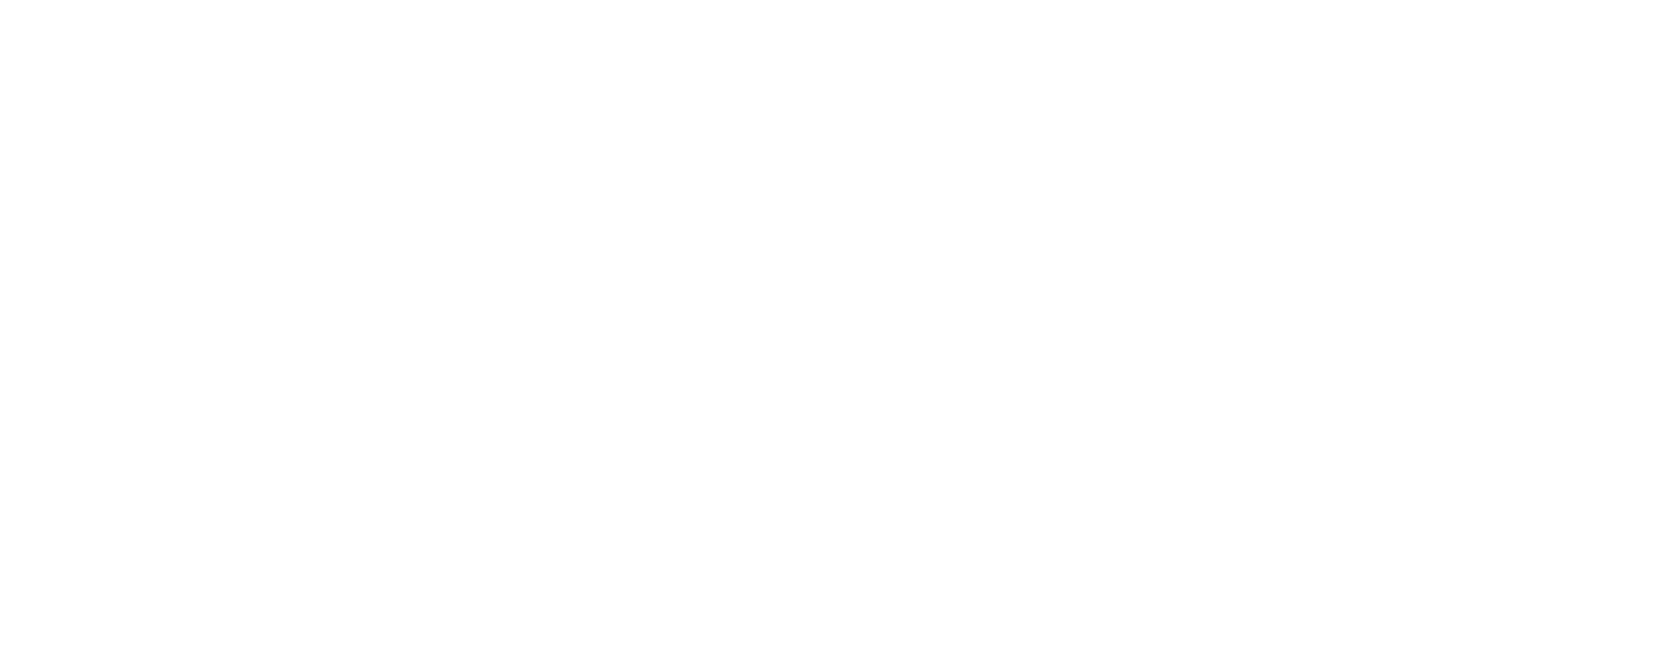 Domaine de Ravat maison dhotes et seminaire Sarlat Dordogne Logo blanc